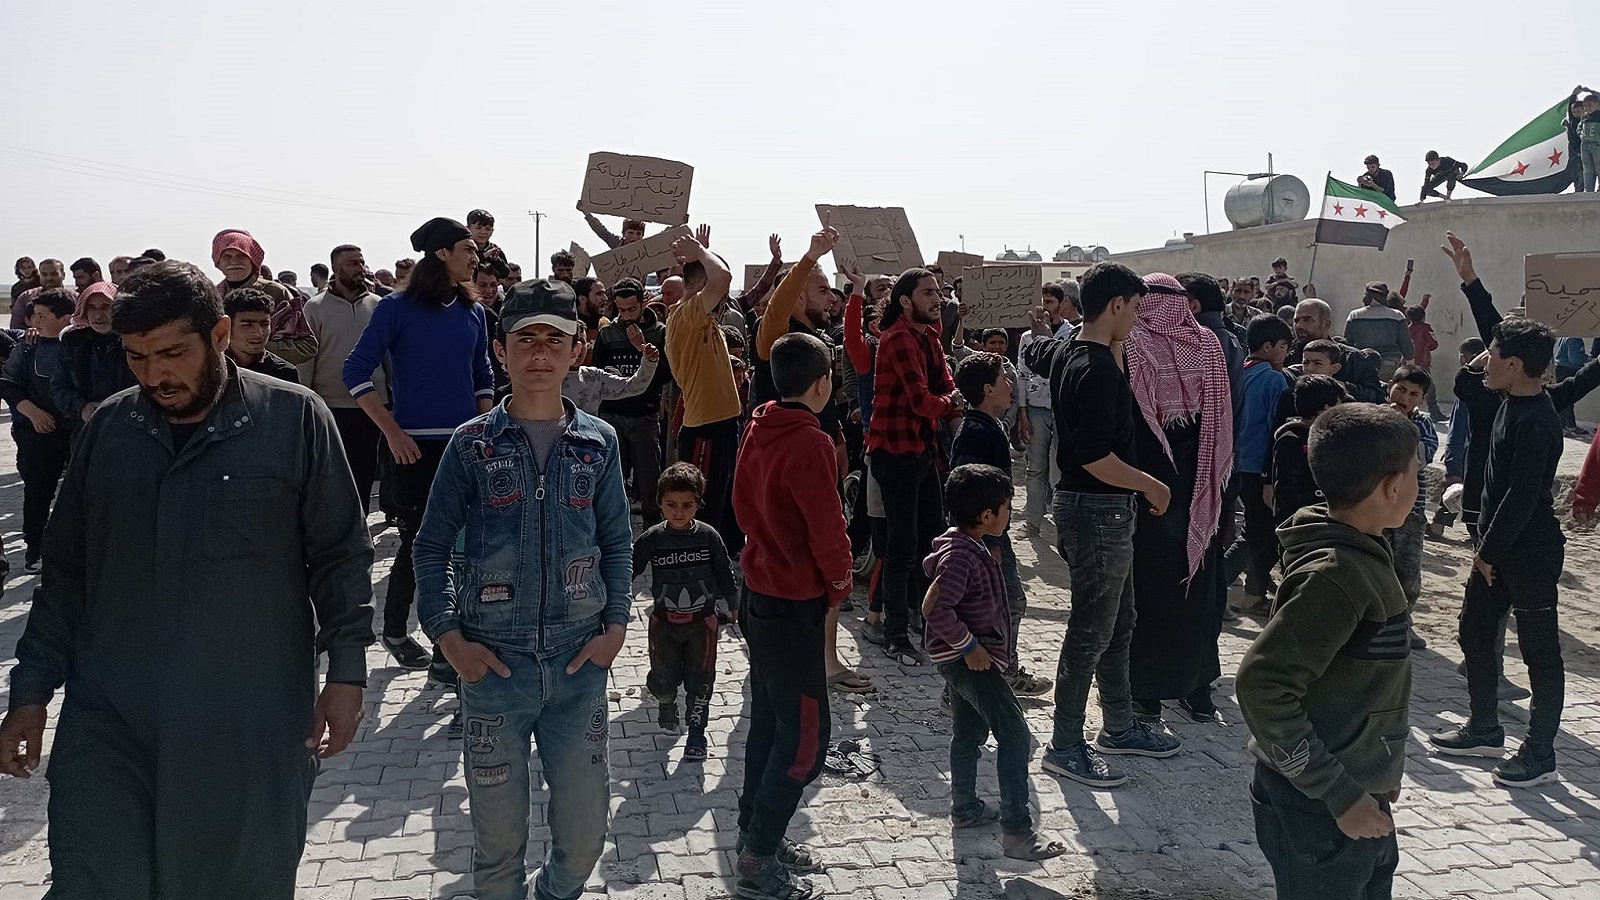 حلب:احتجاجات في مجمع سكني اقتحمه نازحون وتحاصره "آفاد" التركية